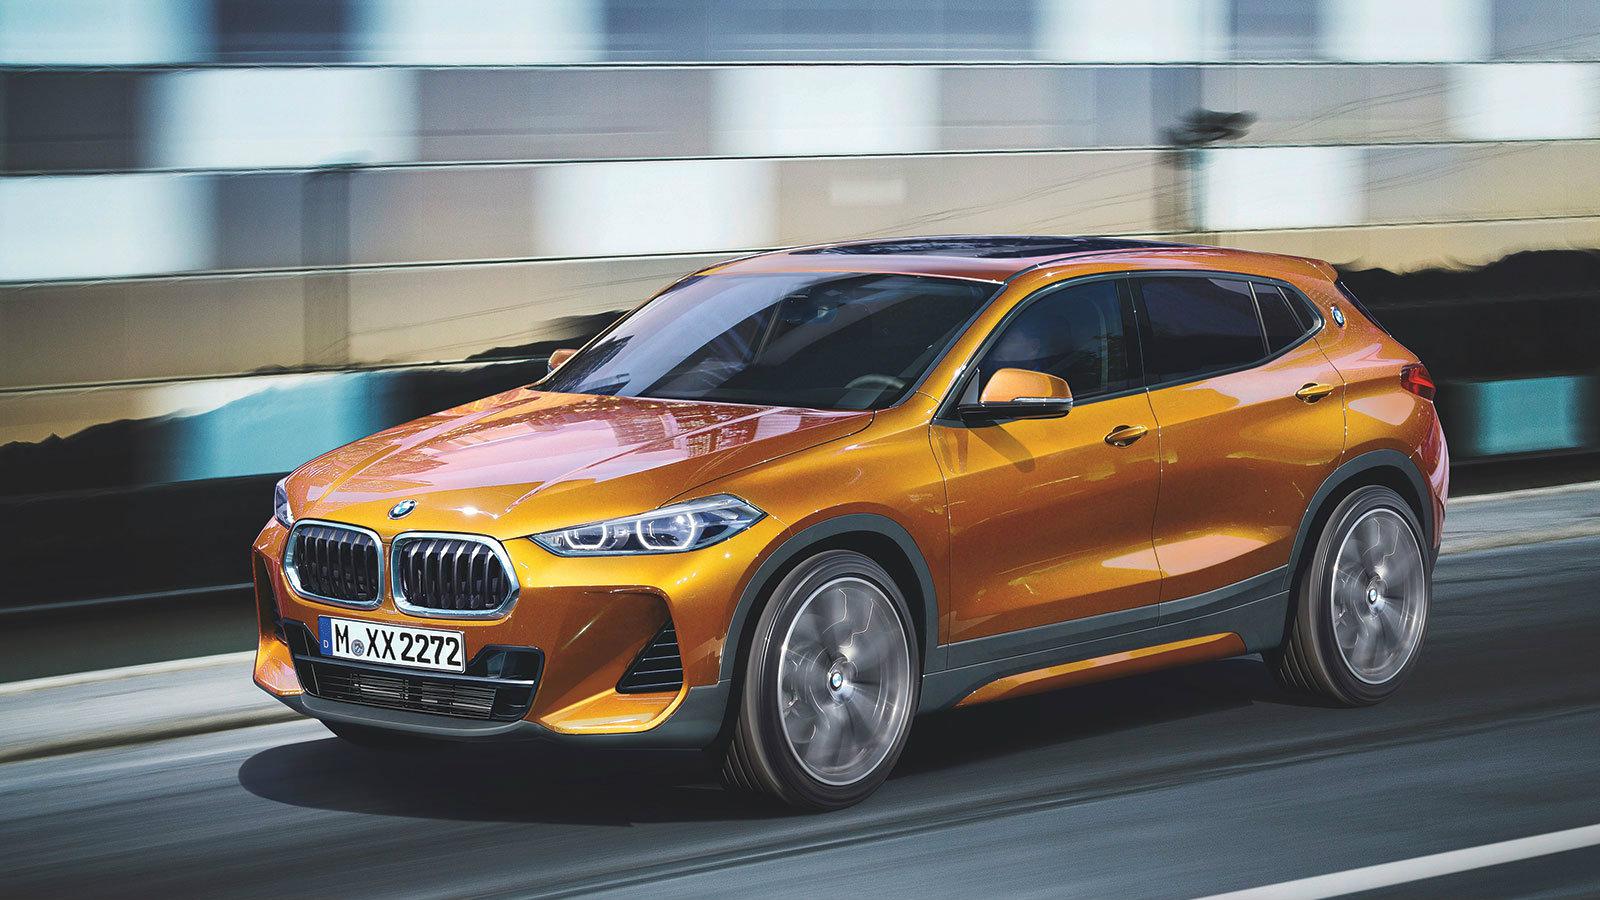 Η εντυπωσιακή BMW X2 θα είναι στην Ευρωπαϊκή αγορά από τις αρχές του 2018 με το SUV/ Coupe αμάξωμά της να κερδίζει τις εντύπωσεις.